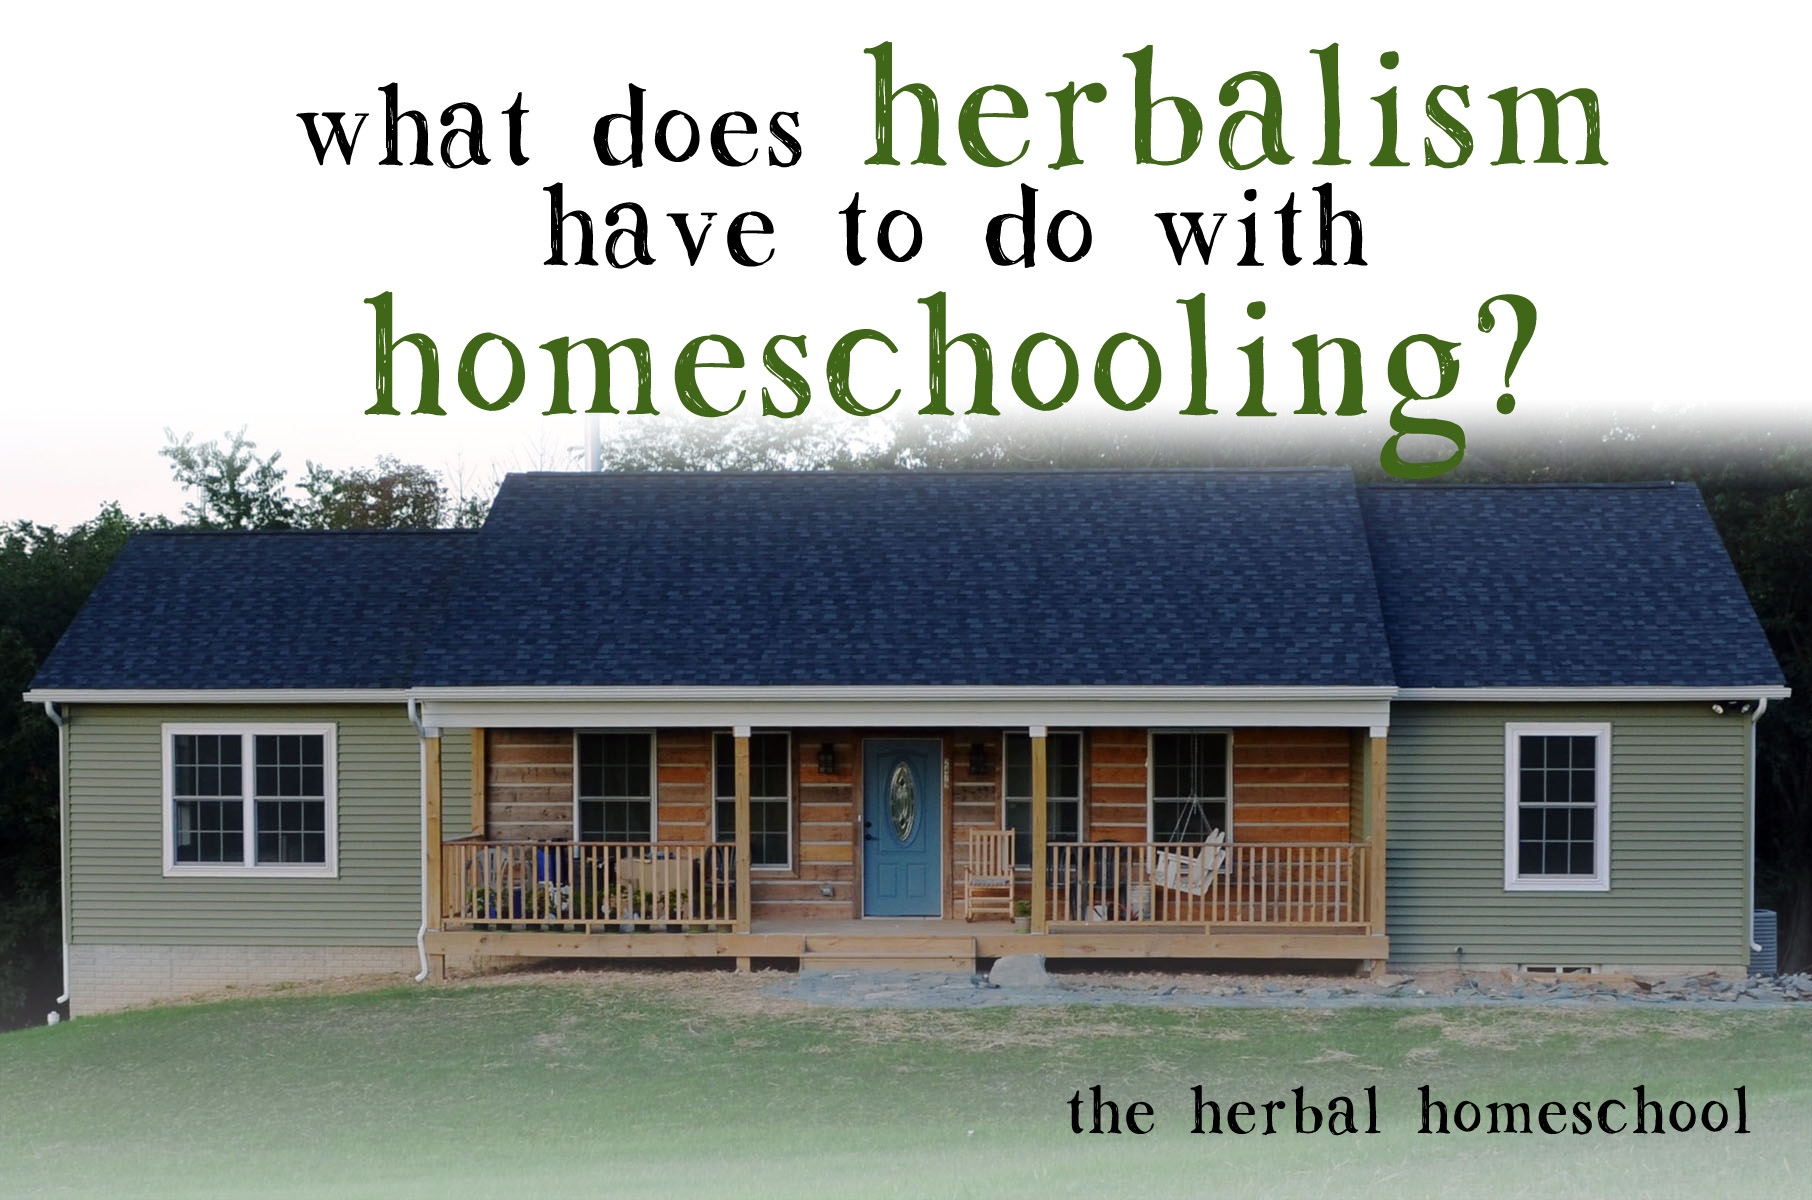 herbalism-and-homeschooling